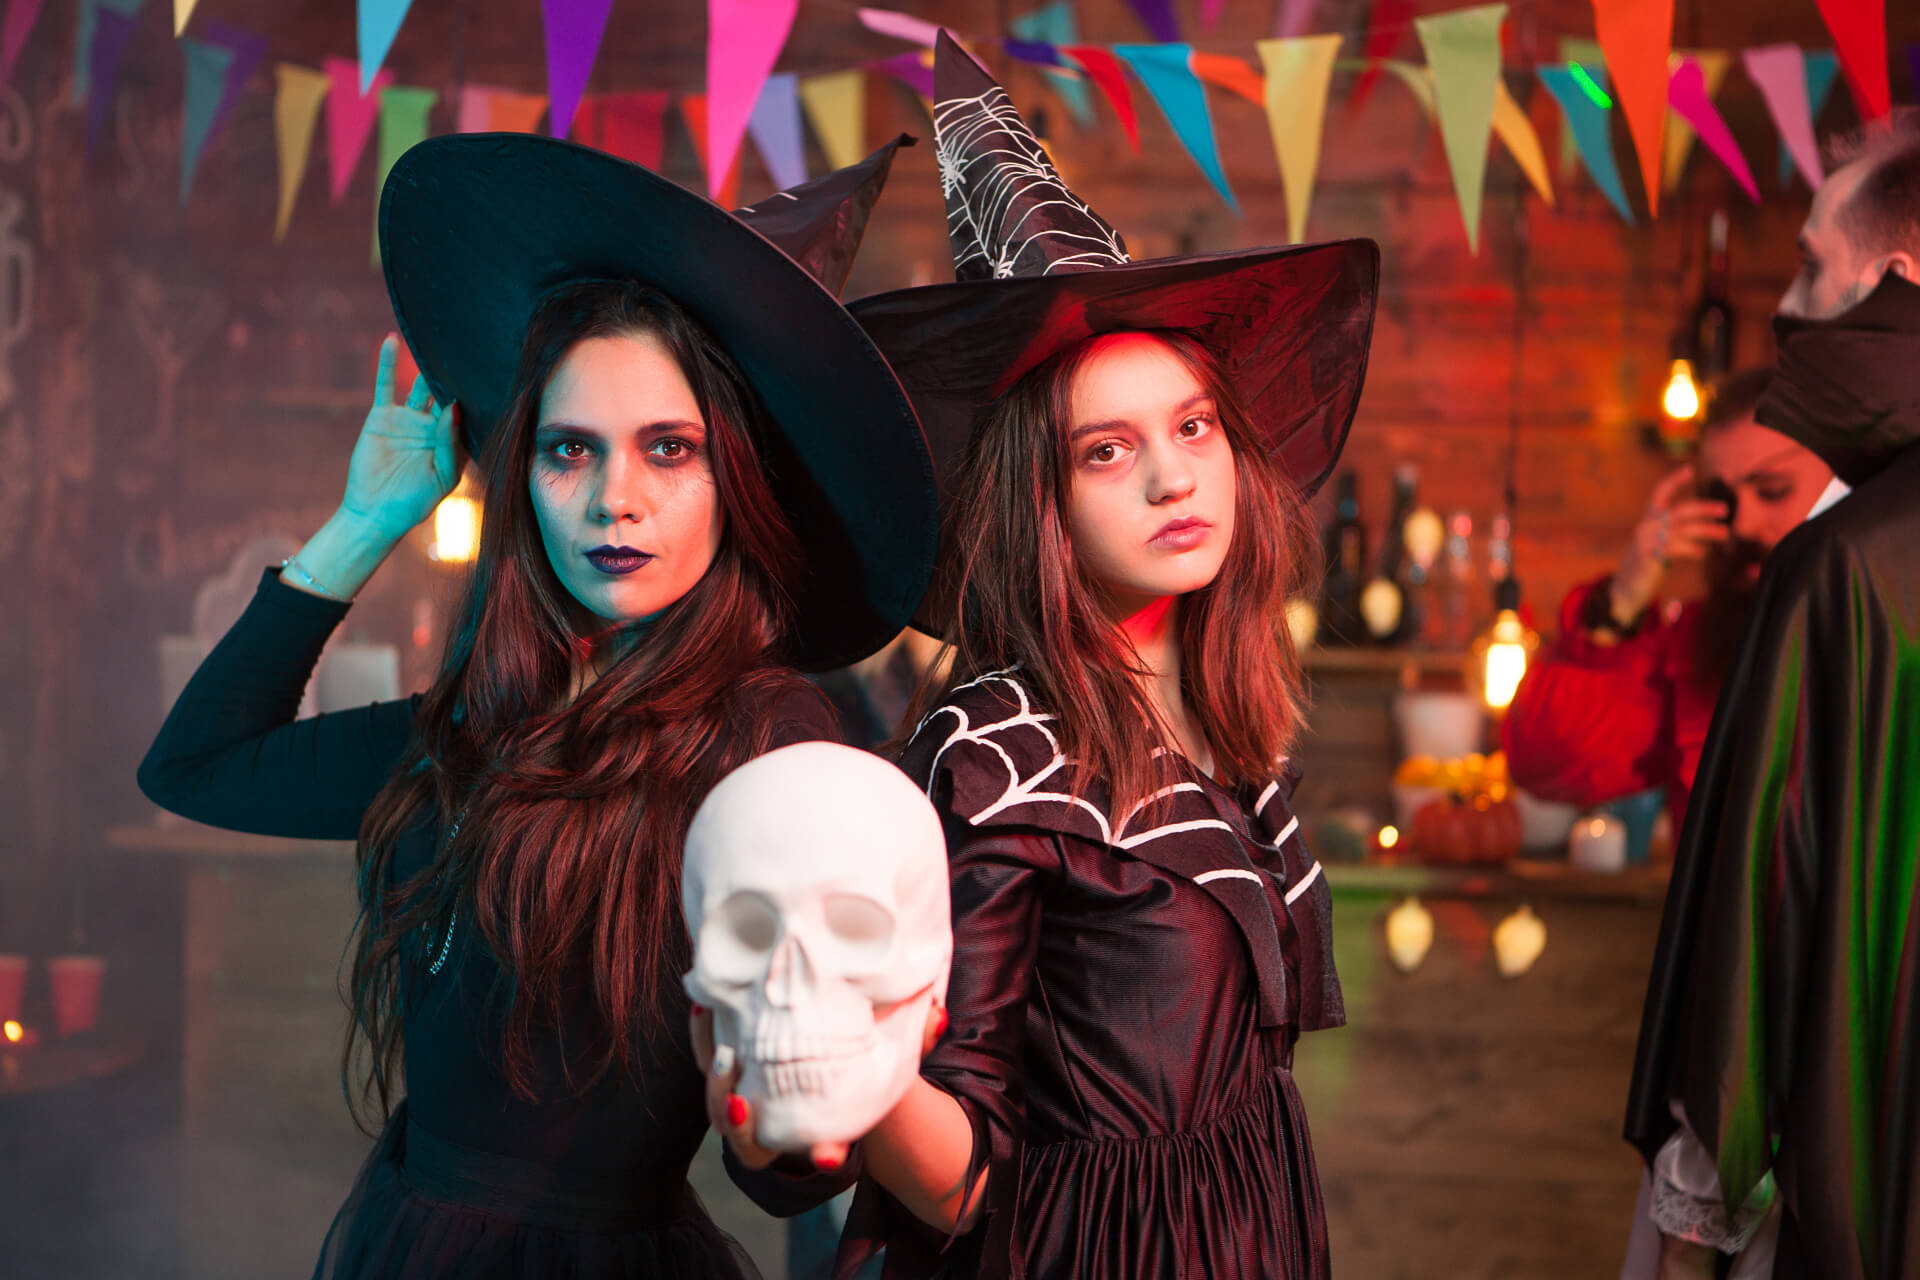 Bereite dich auf die gruseligste Nacht des Jahres vor und entdecke schaurig schöne Halloween-Kostüme für eine unvergessliche Party!